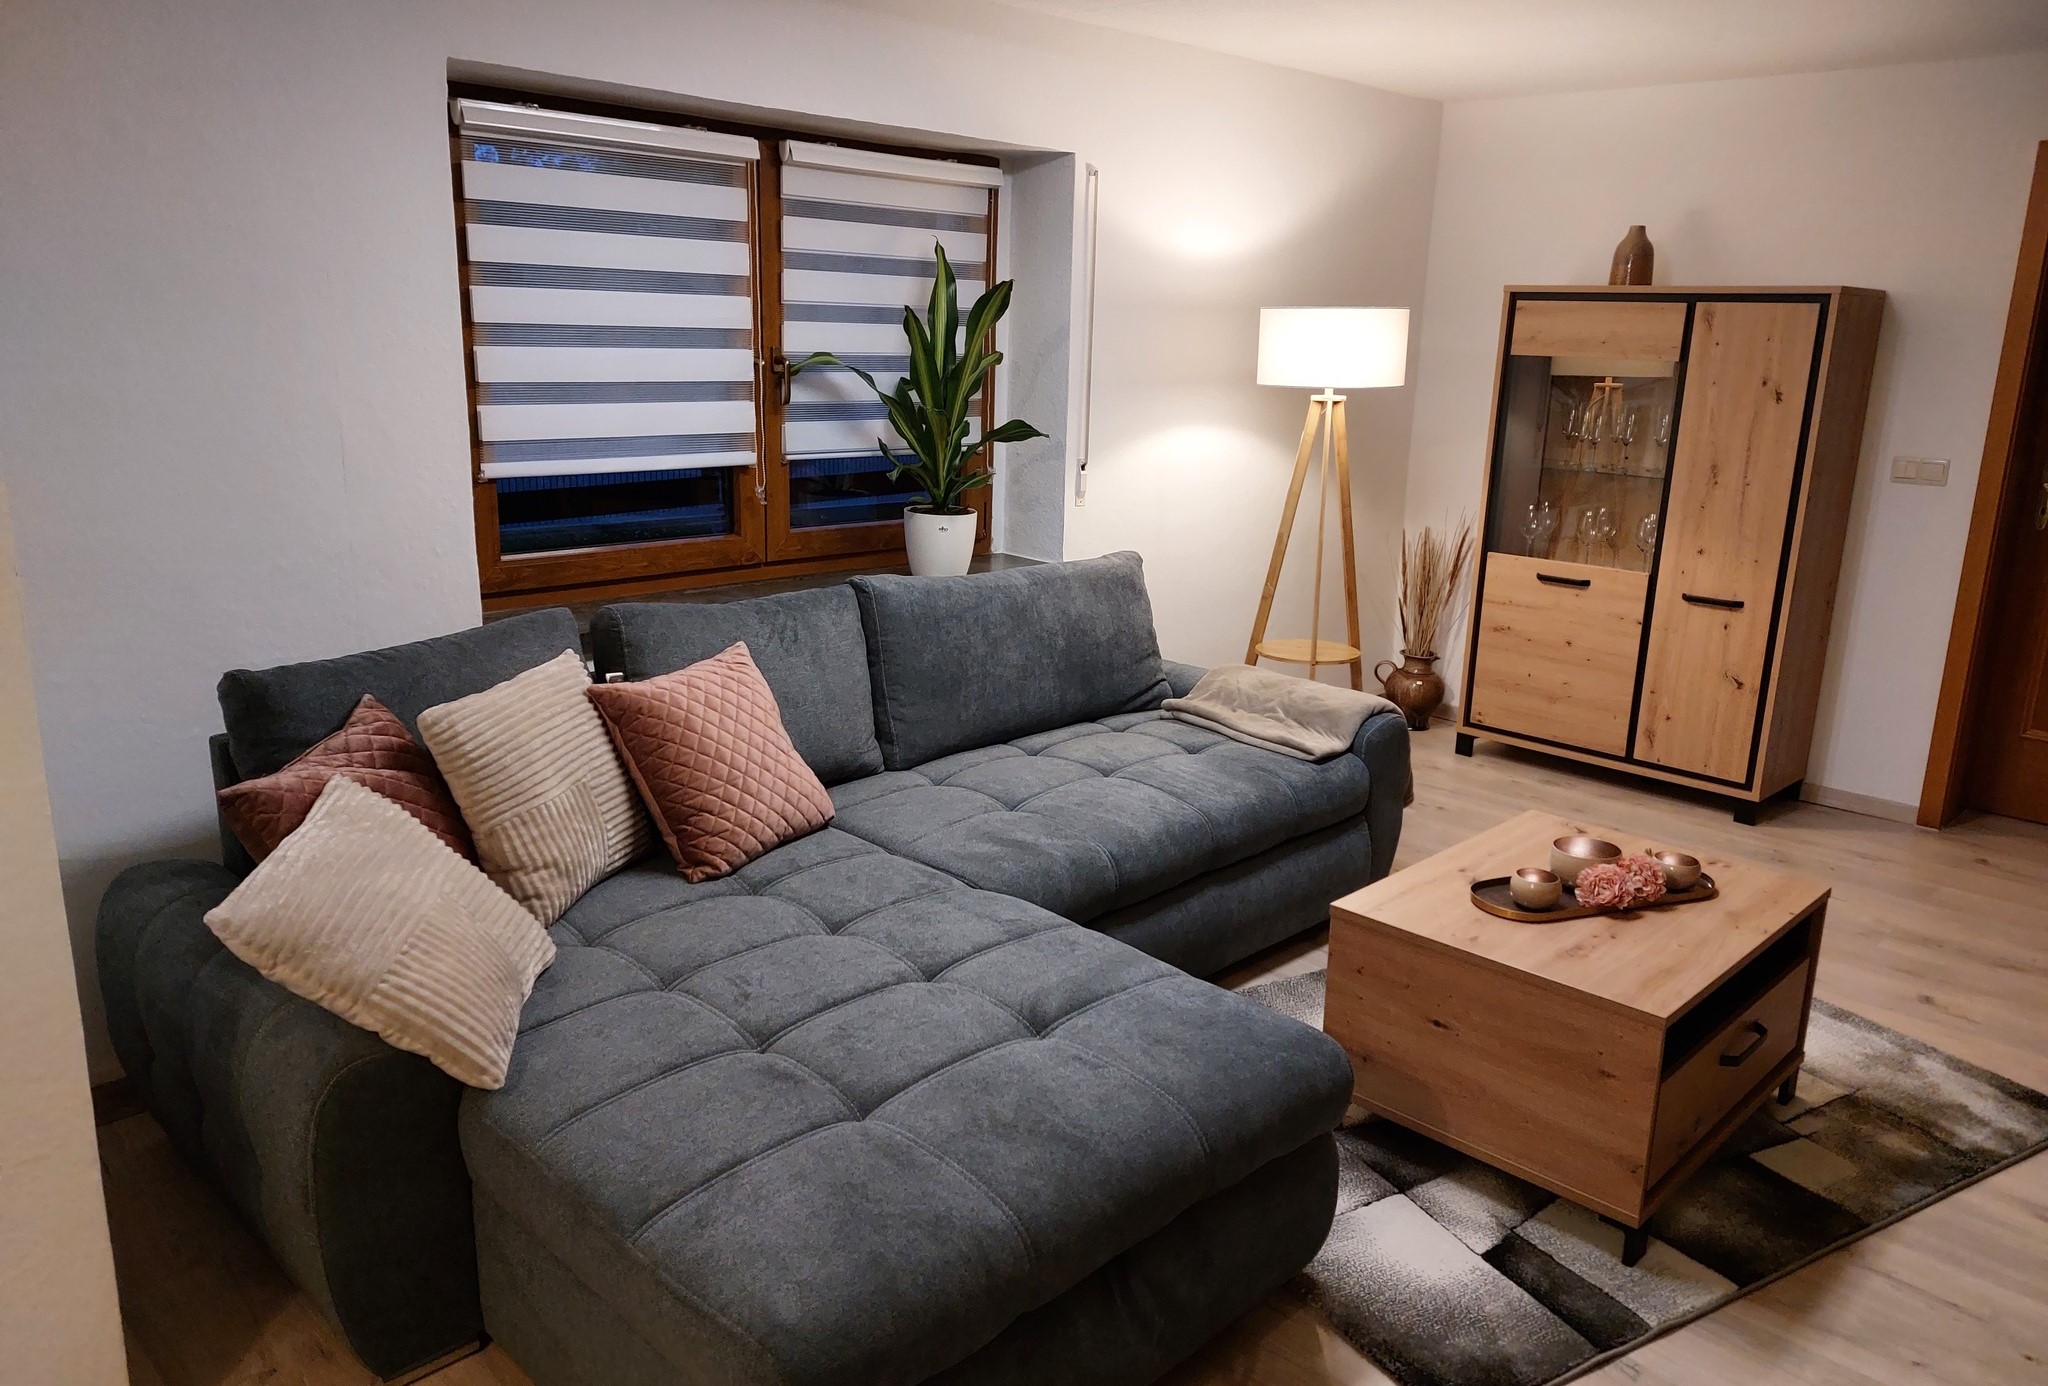 Blick in das Wohnzimmer der Ferienwohnung mit Couch, Tisch und Schrank.